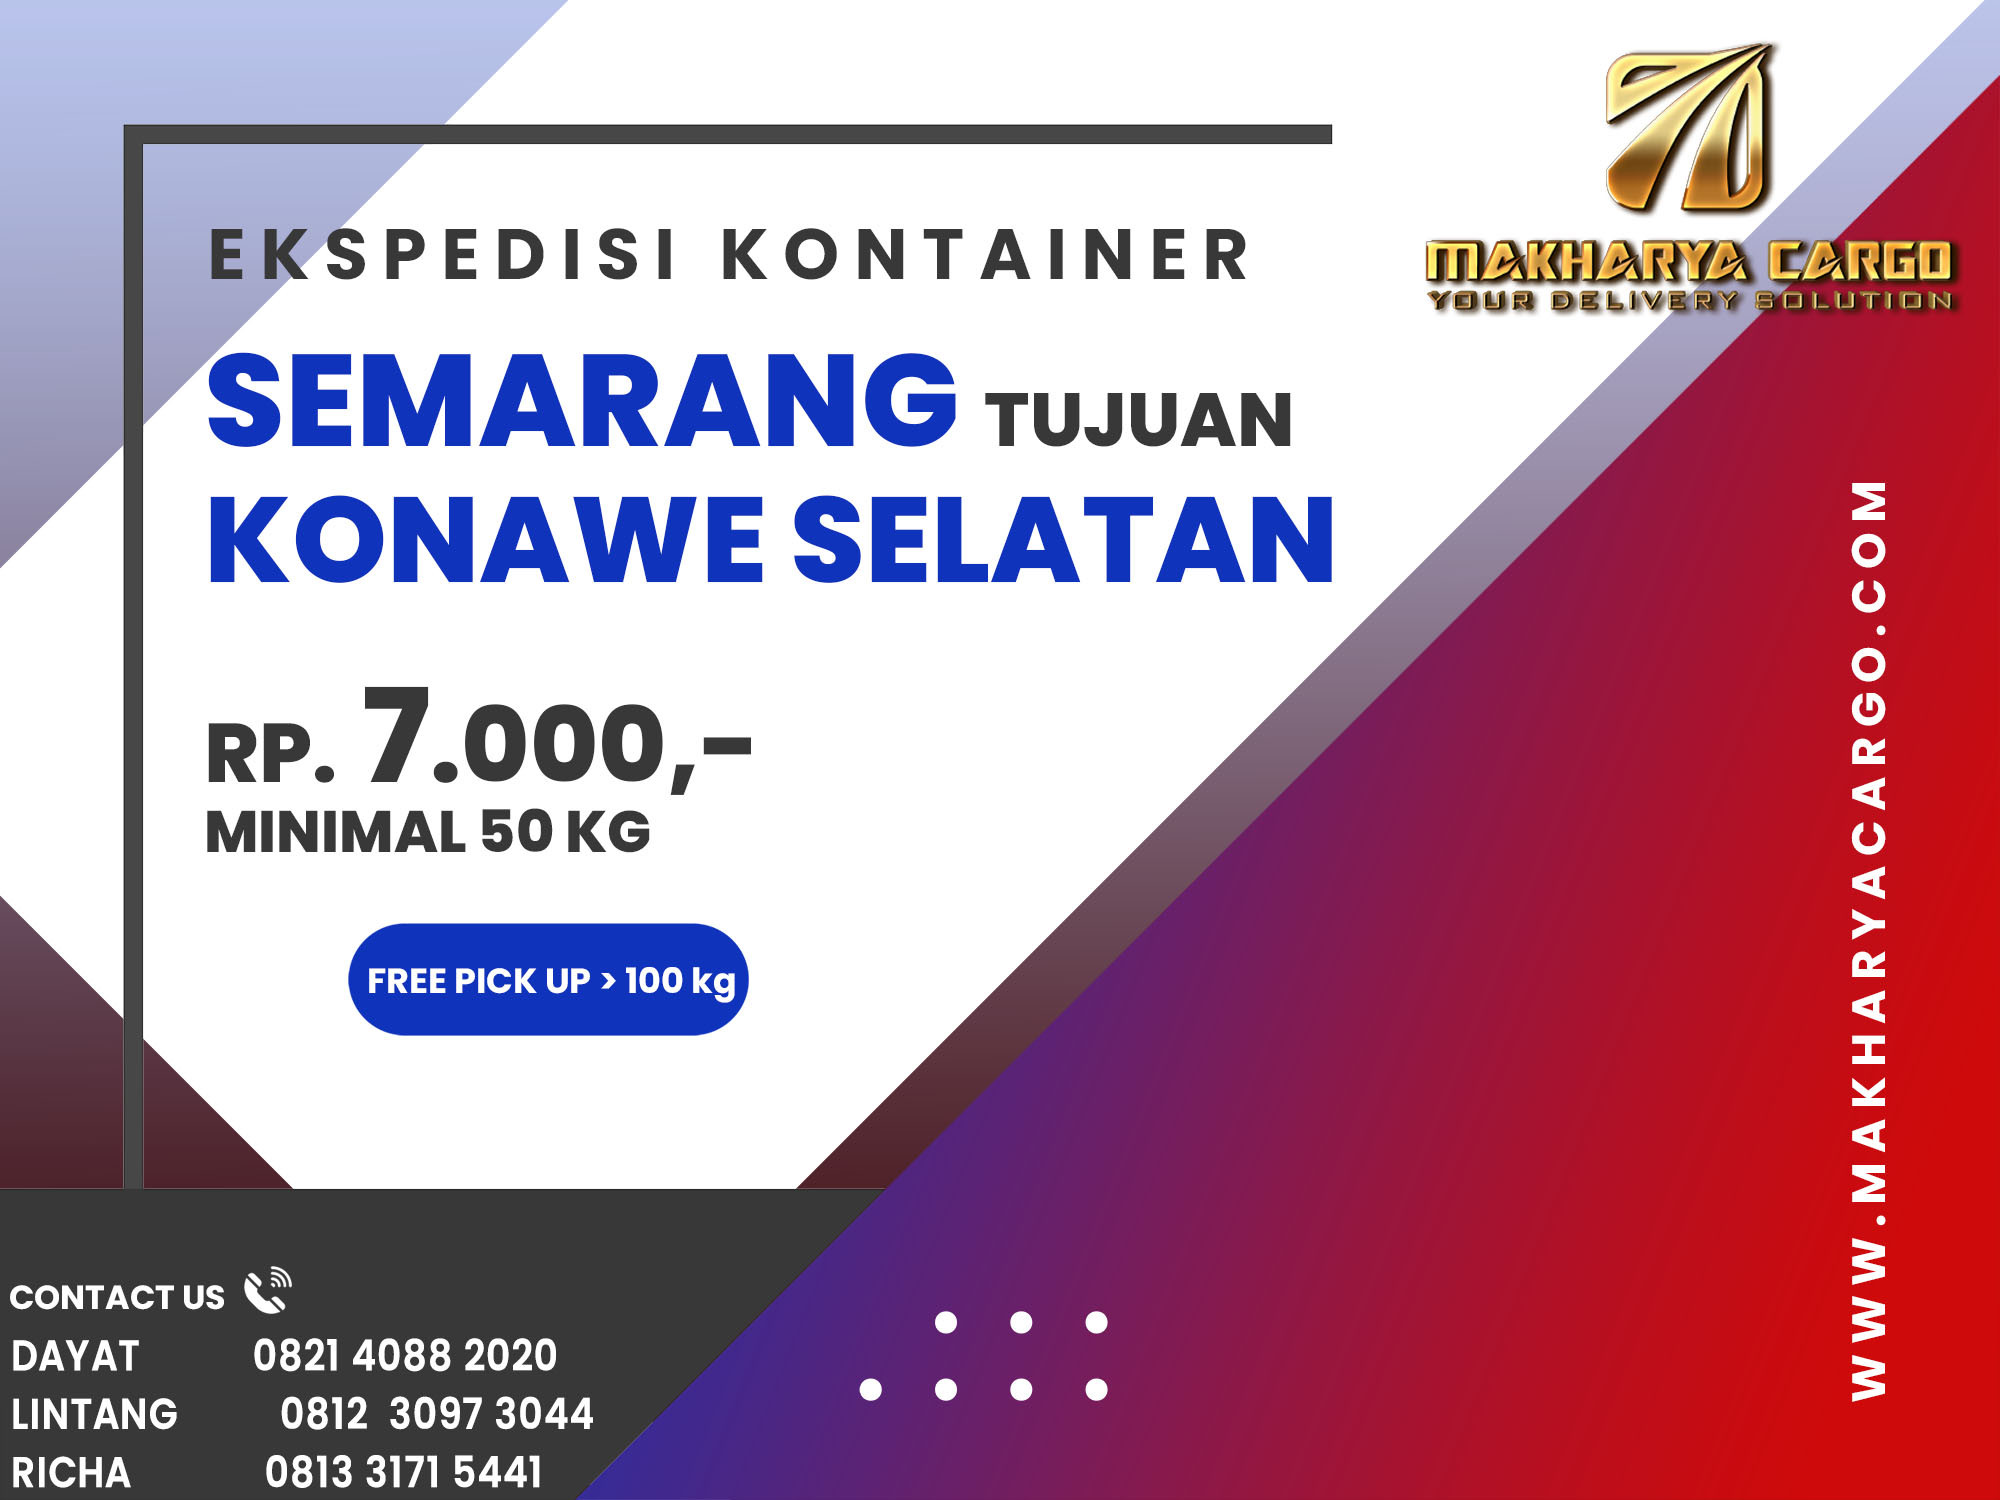 Ekspedisi Kontainer Semarang Konawe Selatan